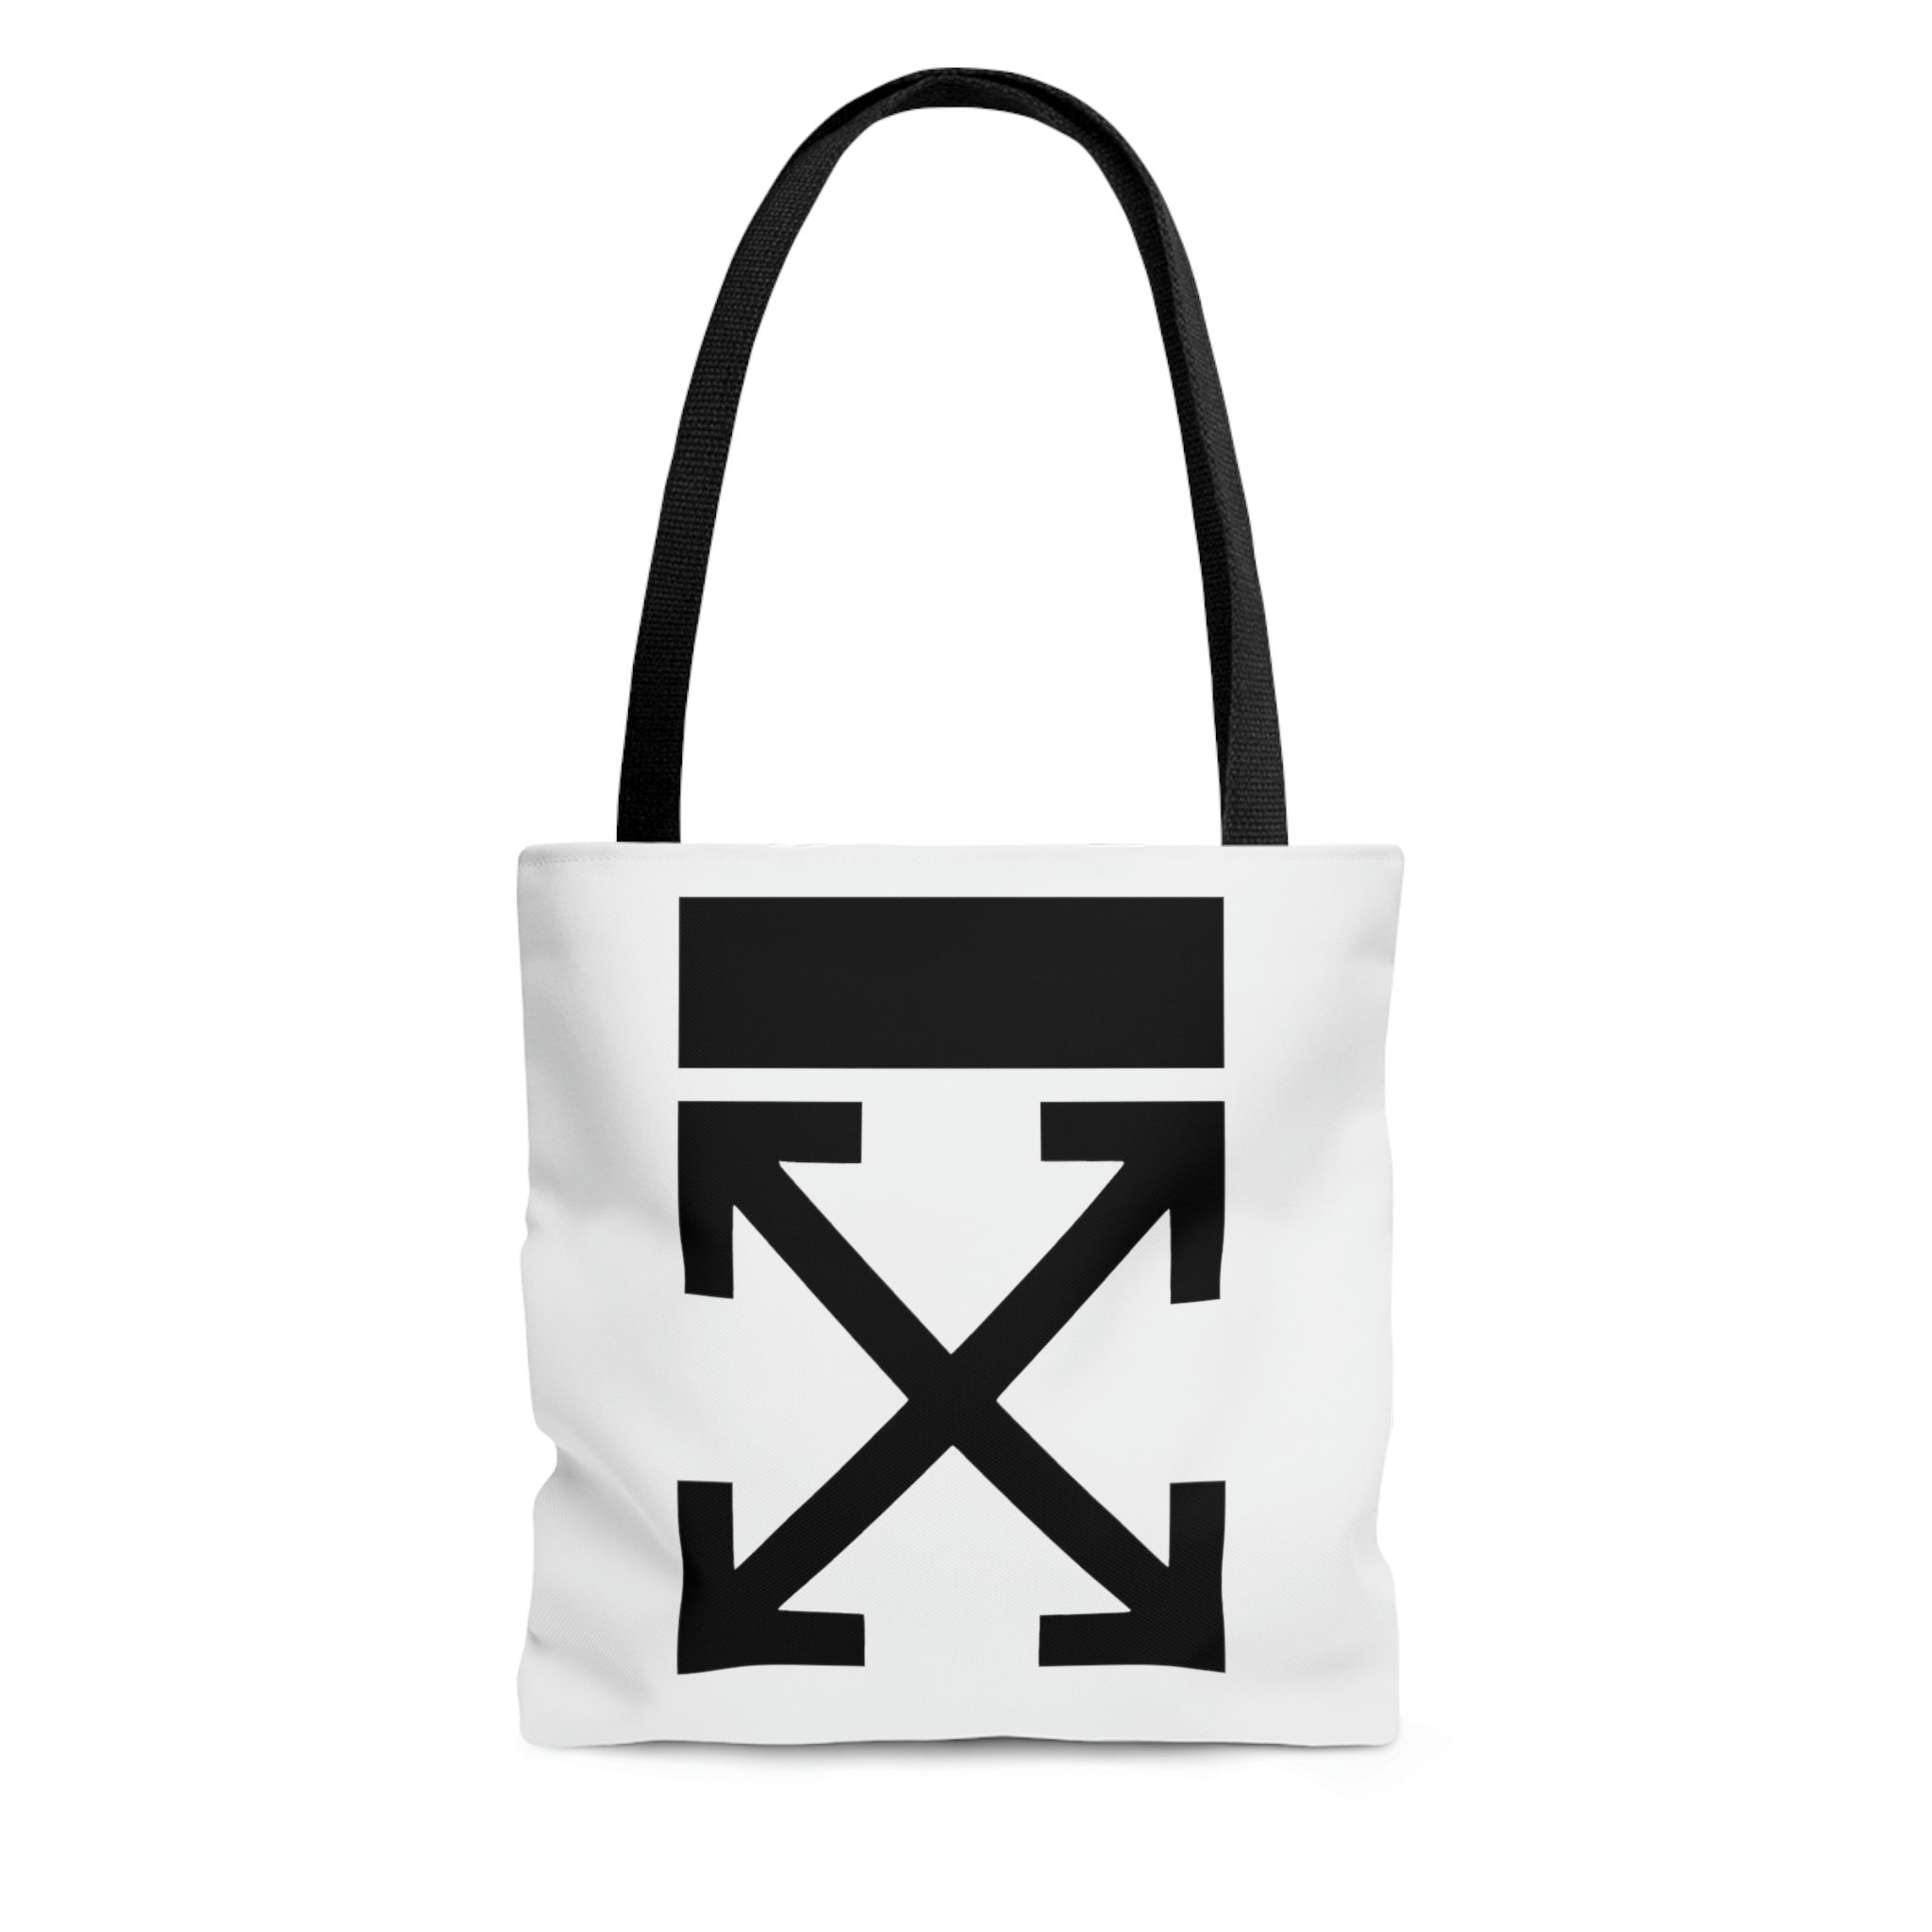 White Designer Bag 